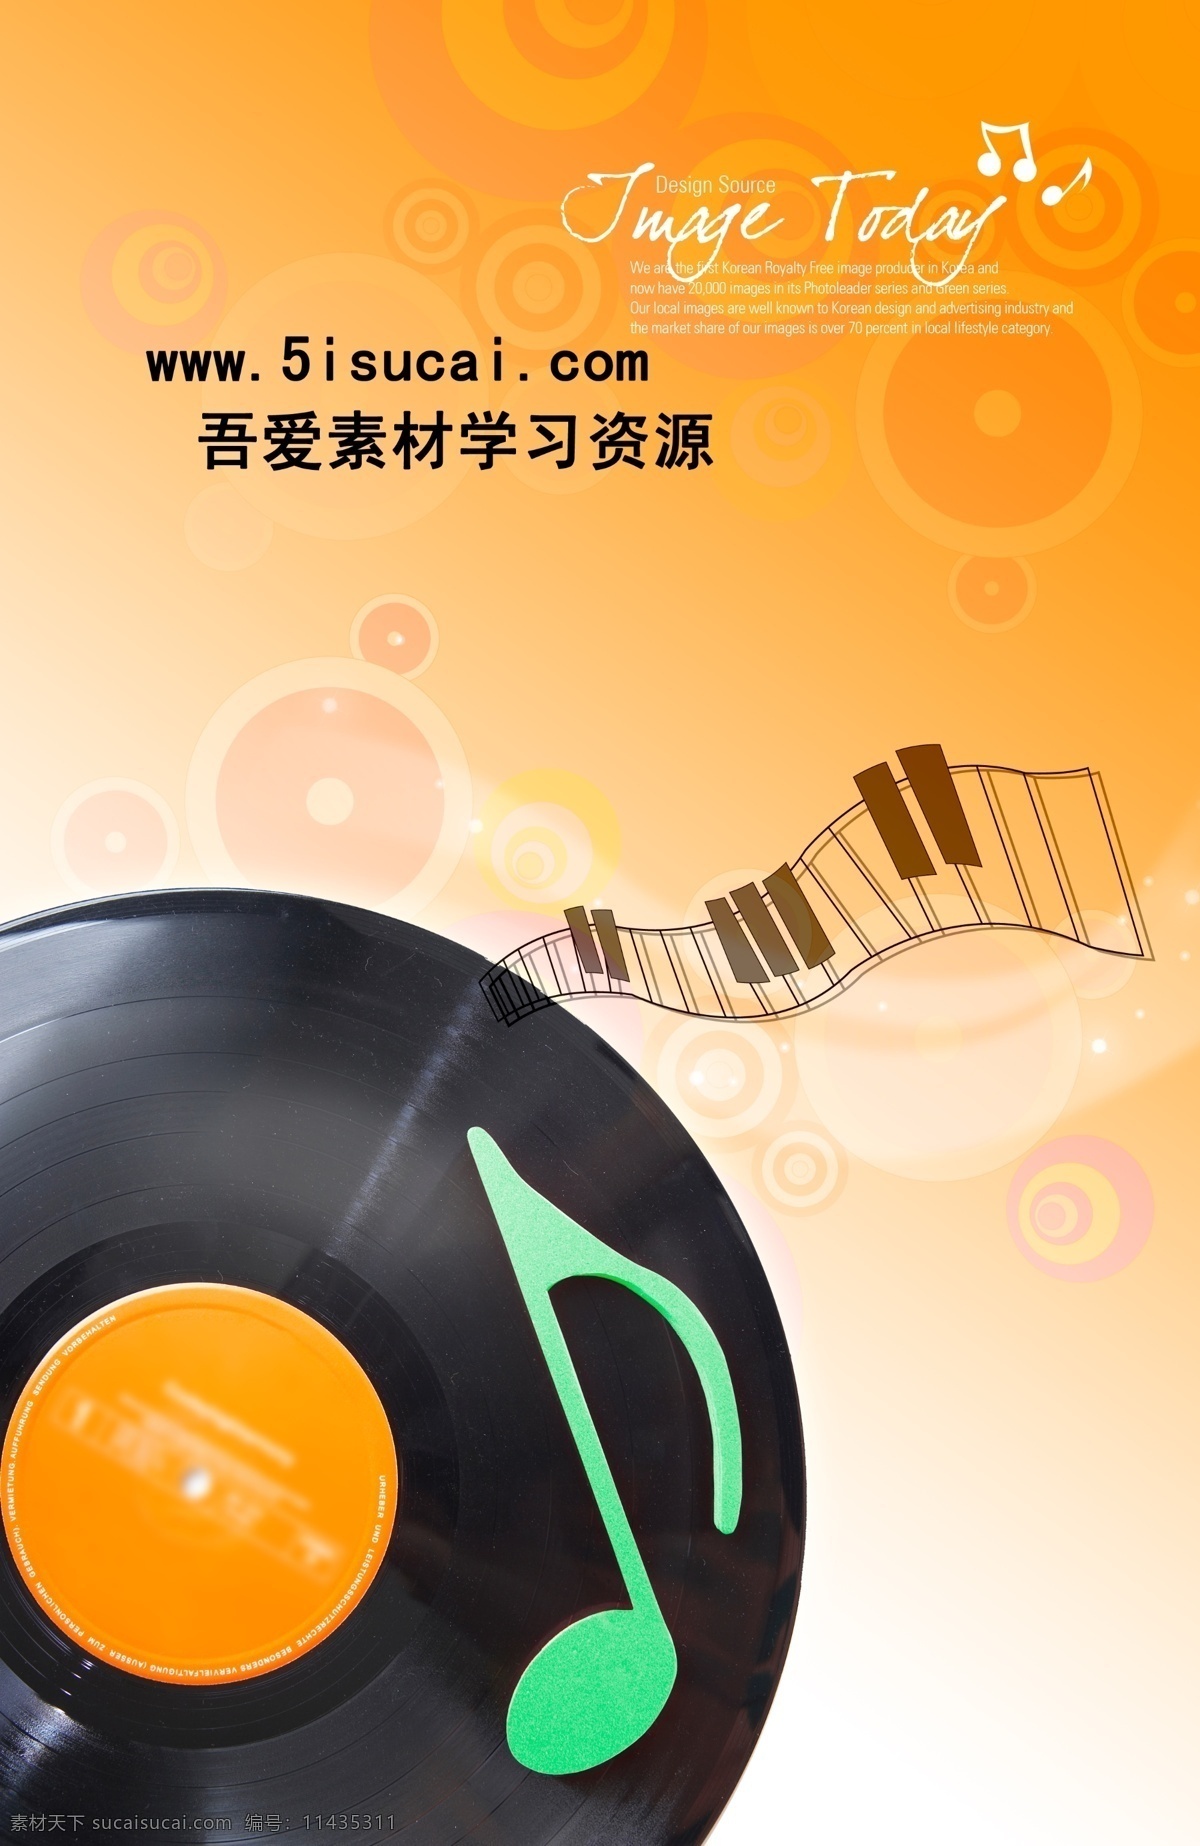 天籁之音 老唱片 琴键 音符 广告设计模板 国外广告设计 源文件库 300